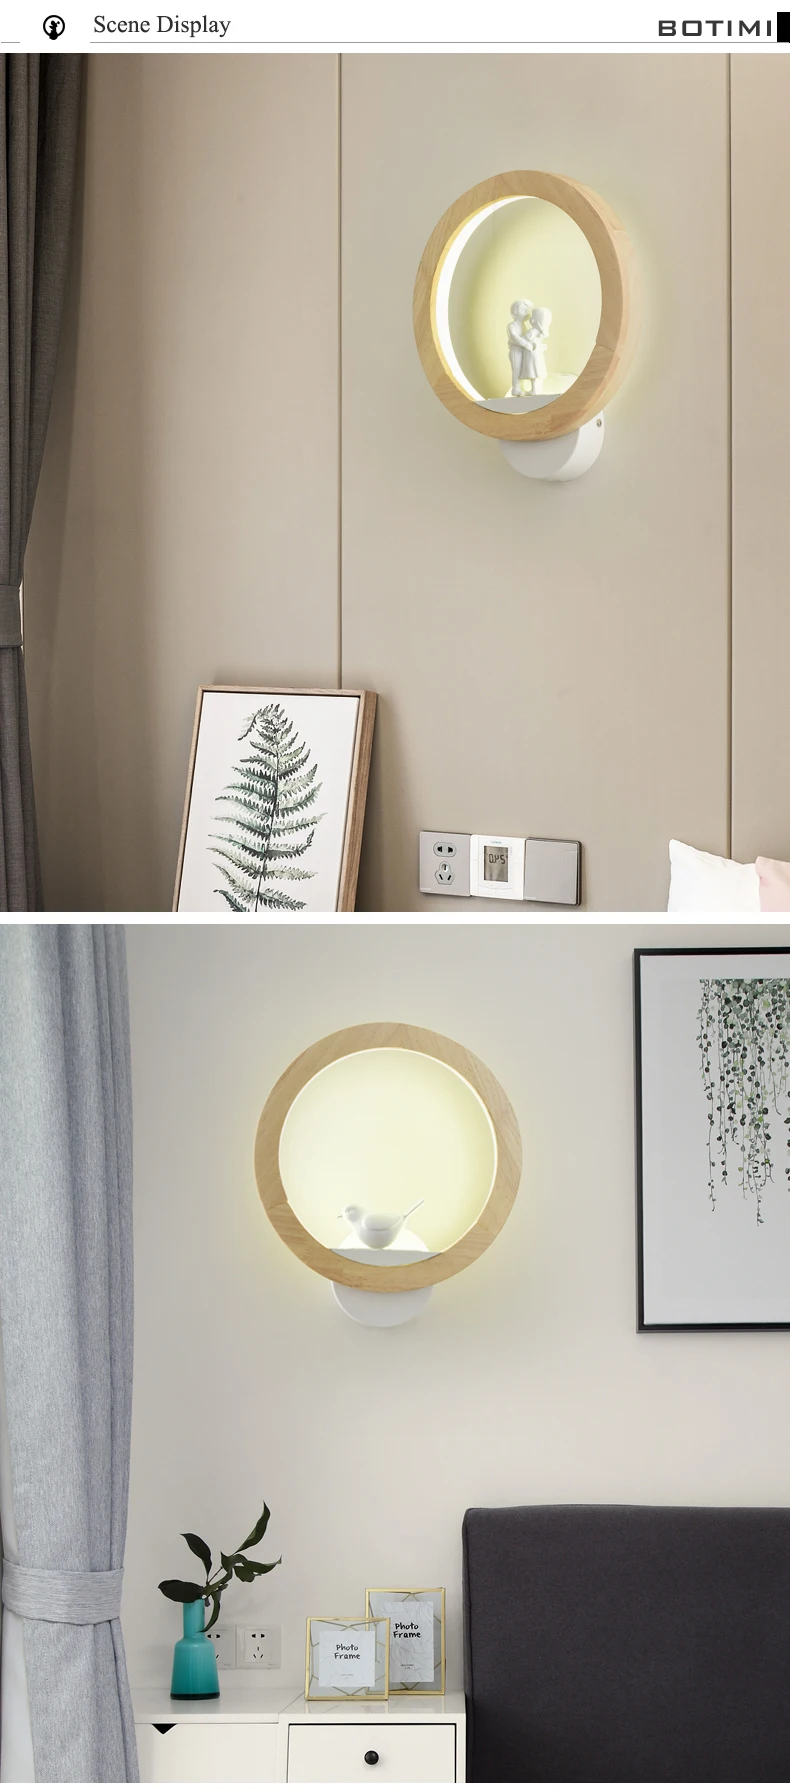 BOTIMI светодиодный настенный светильник в скандинавском стиле, современный настенный светильник, деревянный прикроватный светильник, настенный светильник в виде птиц